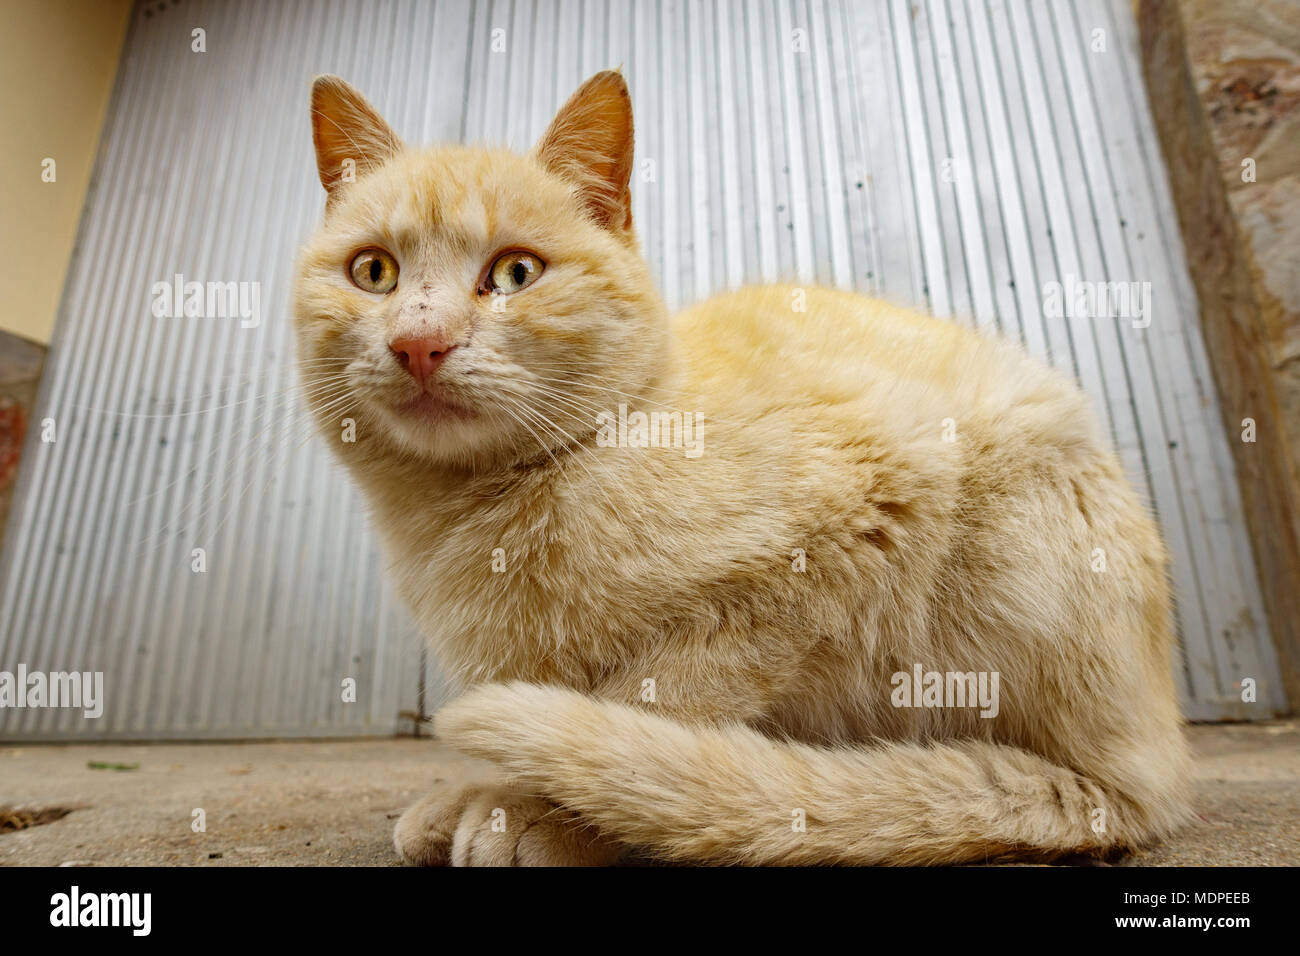 Gelbe Katze vor der eiserne Tür Stockfotografie - Alamy